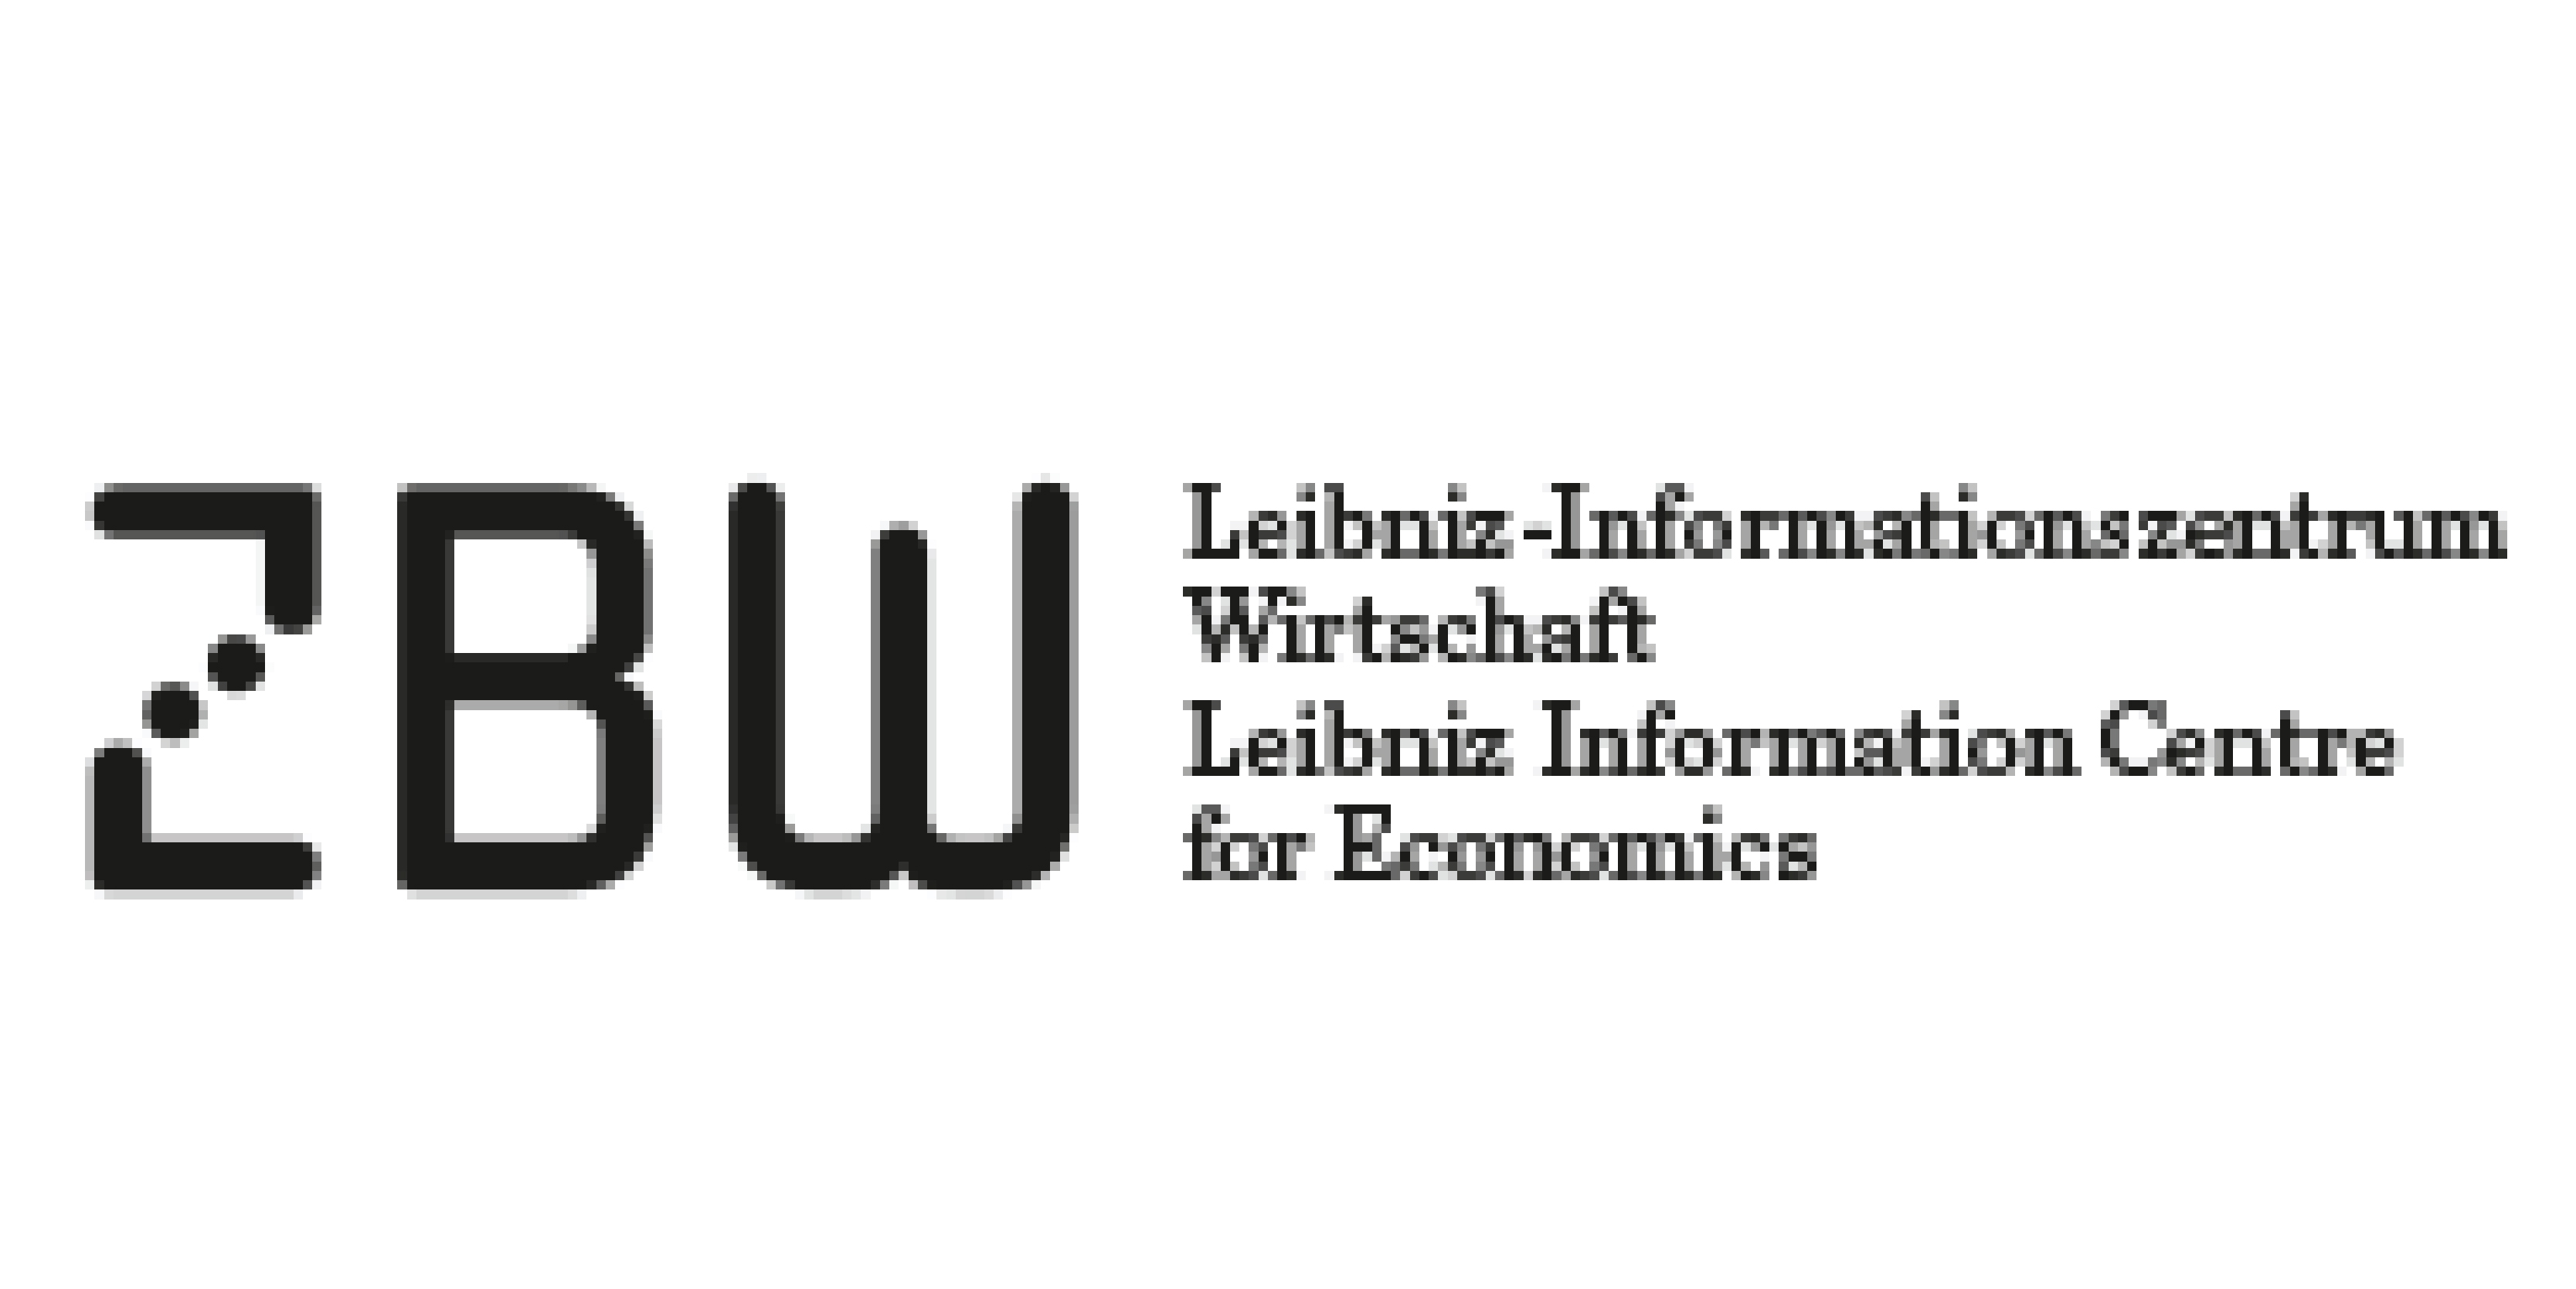 ZBW-LEIBNIZ INFORMATION CENTRE FOR ECONOMICS (GERMANY)